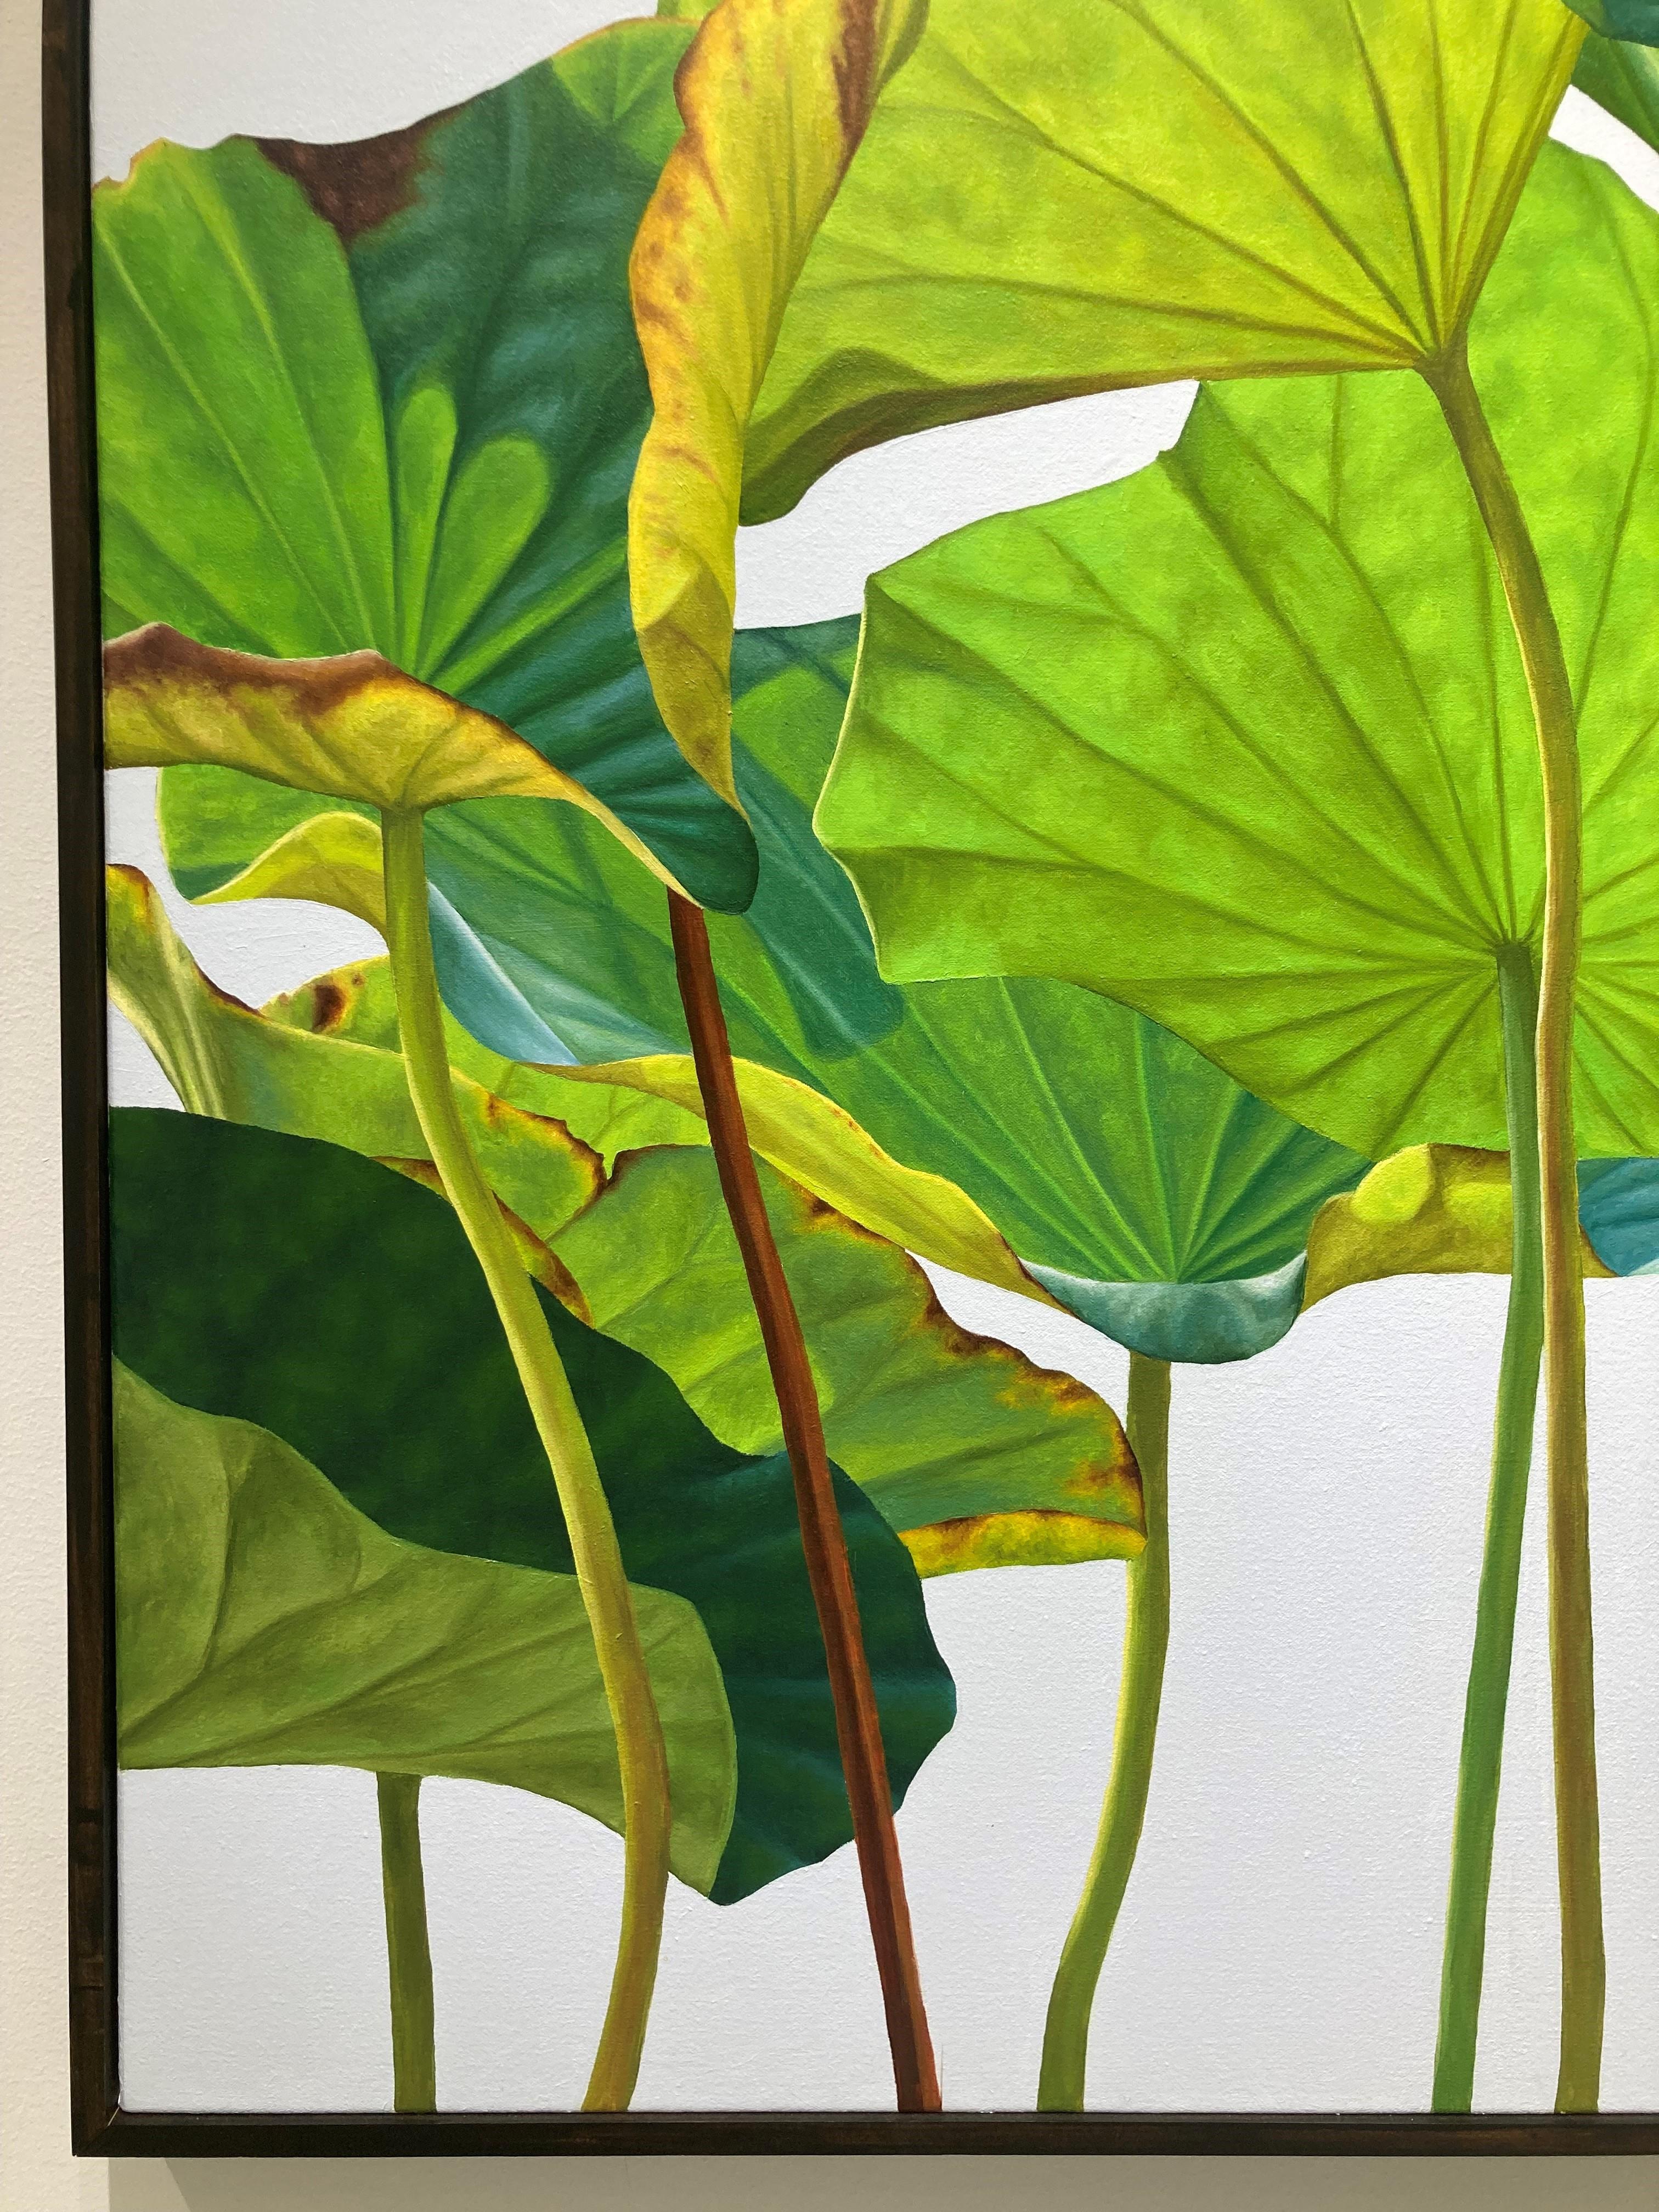 Lotus 28 : Peinture réaliste de nature morte de lotus verts sur gris - Vert Still-Life Painting par Frank DePietro